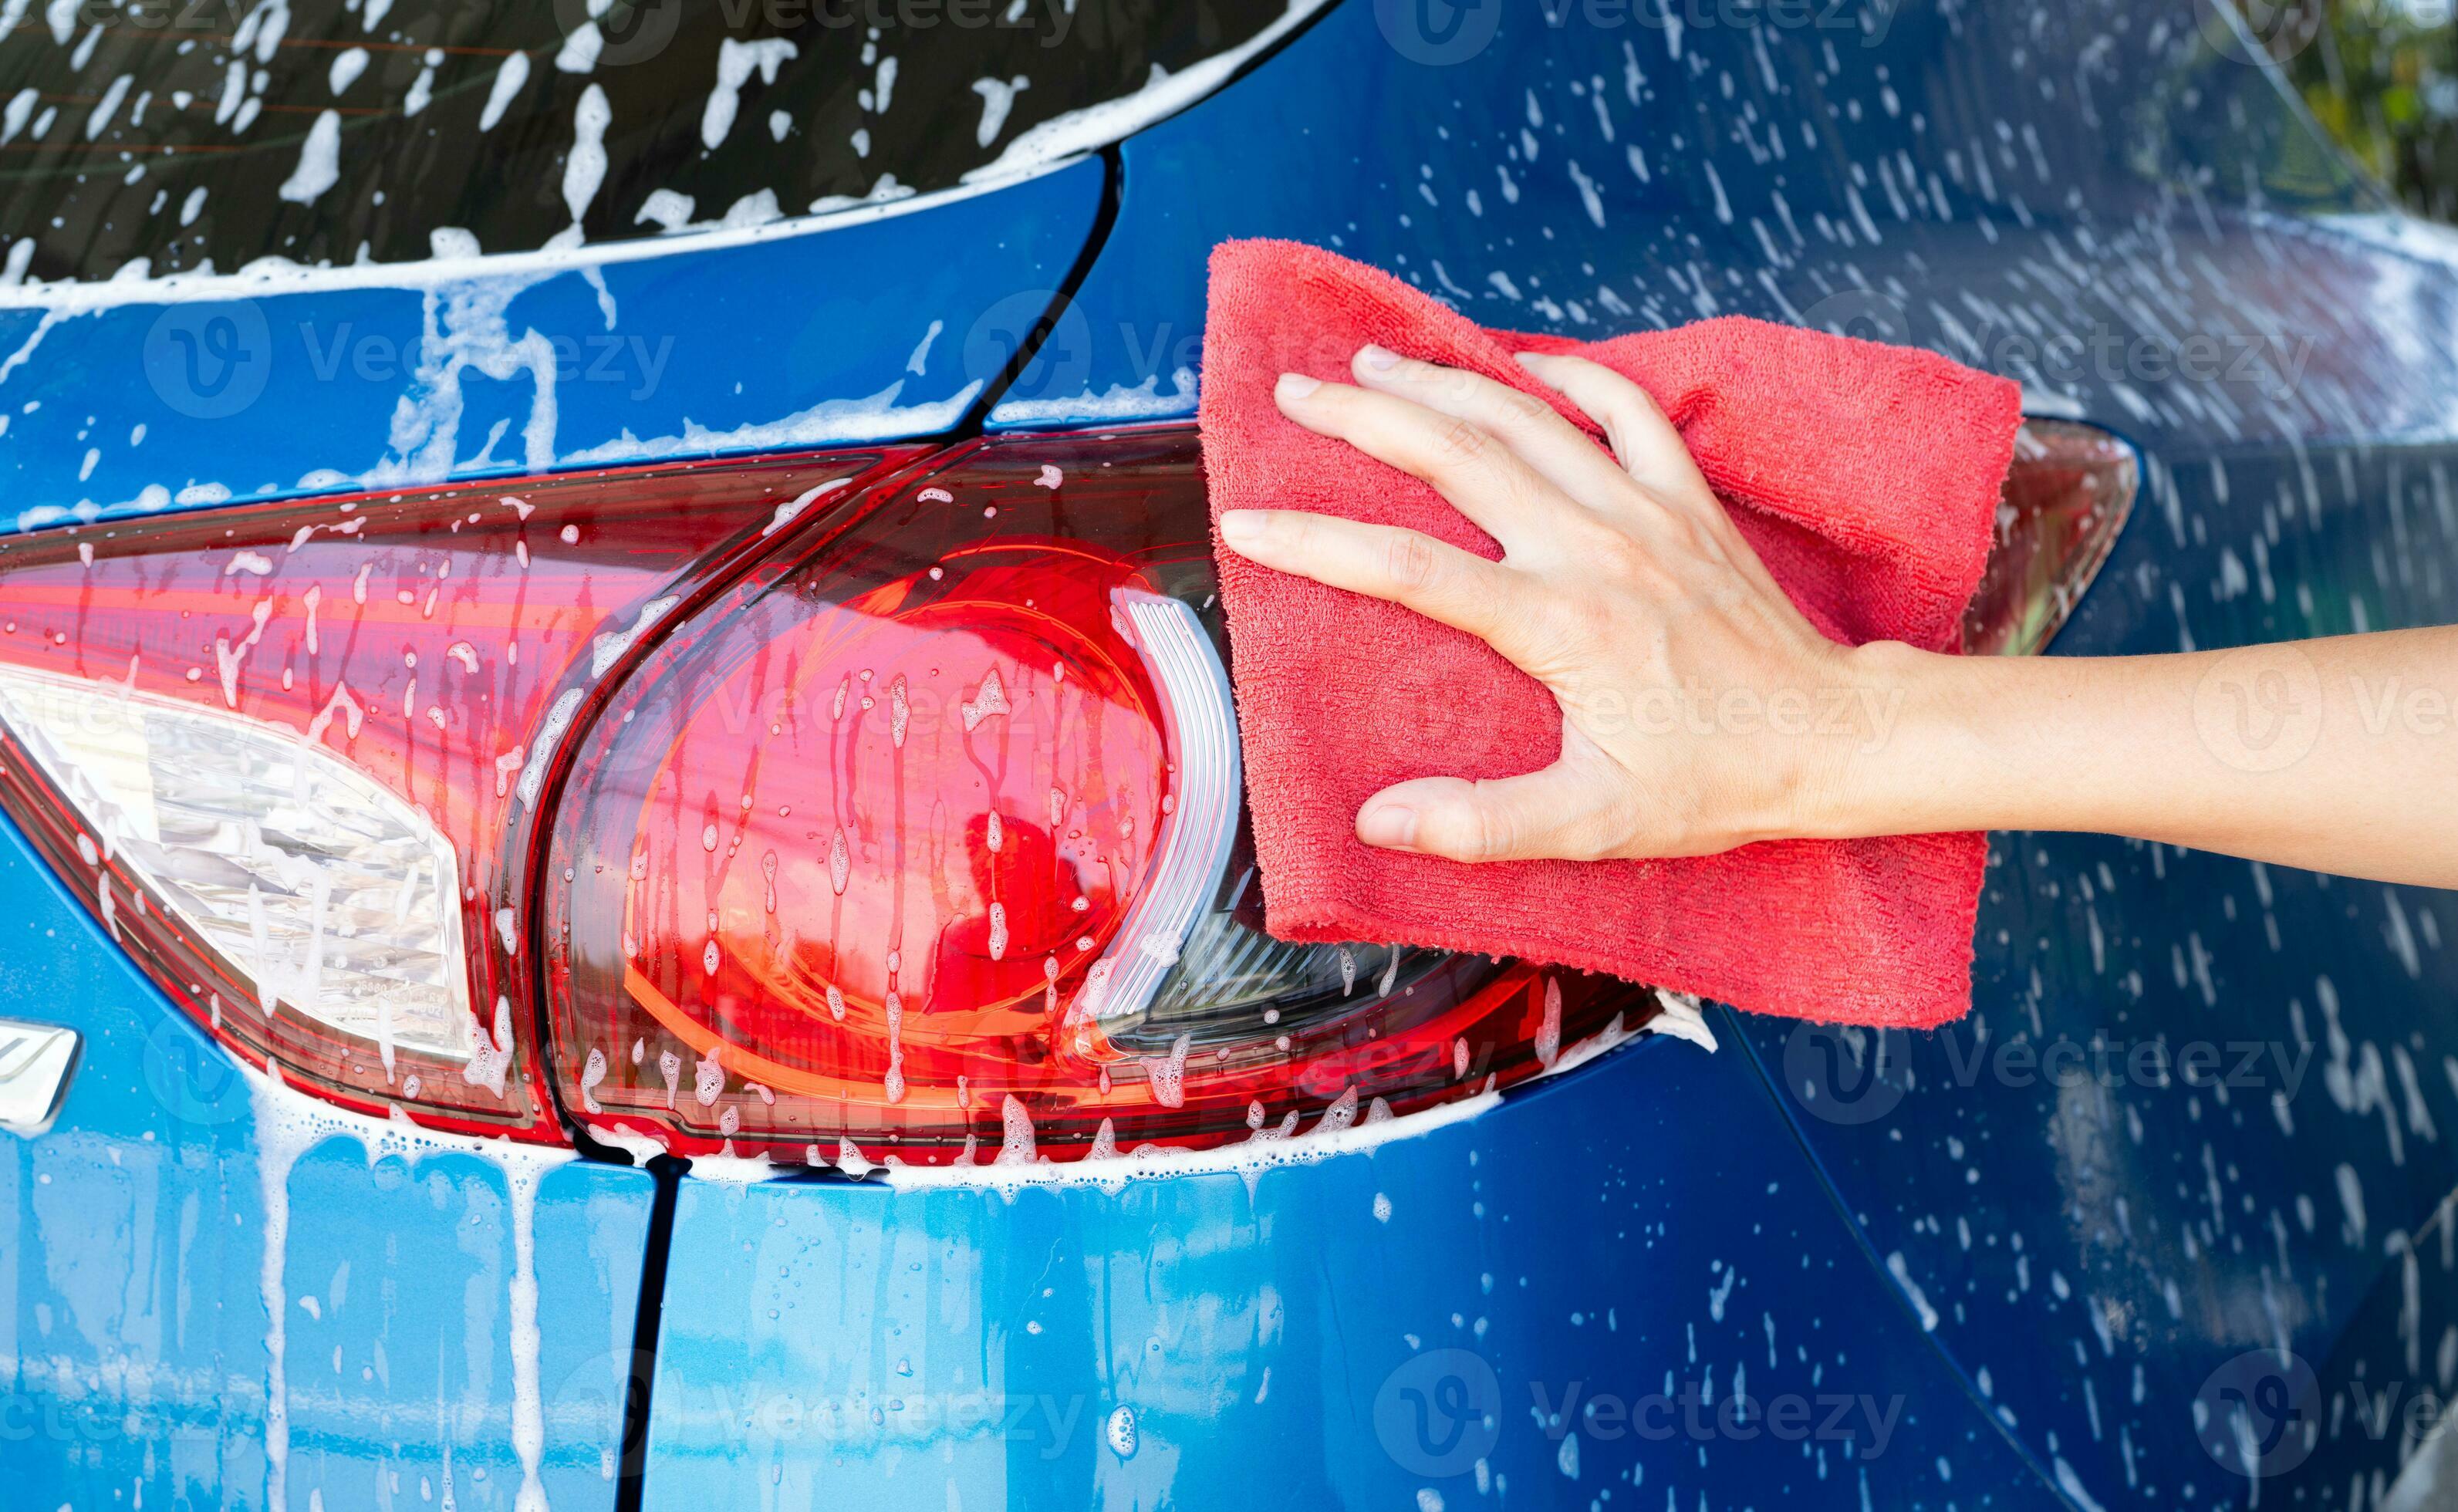 Lavar el coche con jabón. cierre el concepto de coche limpio en el